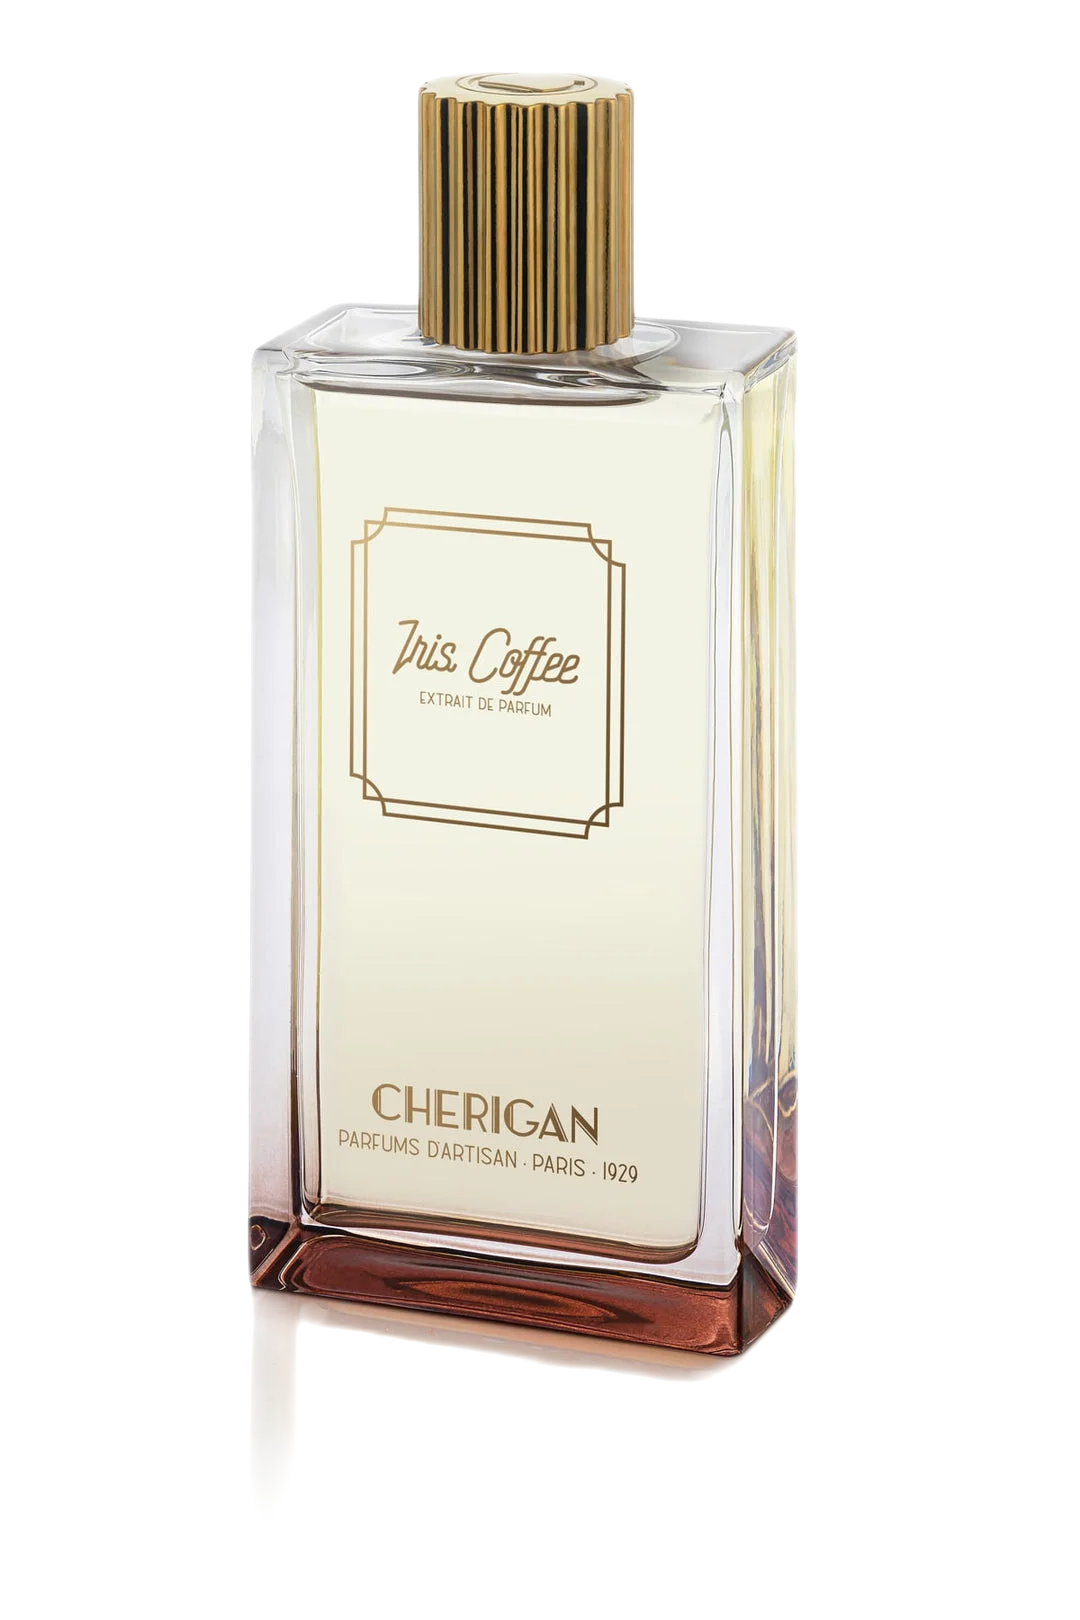 Cherigan IRIS COFFEE extrait de parfum